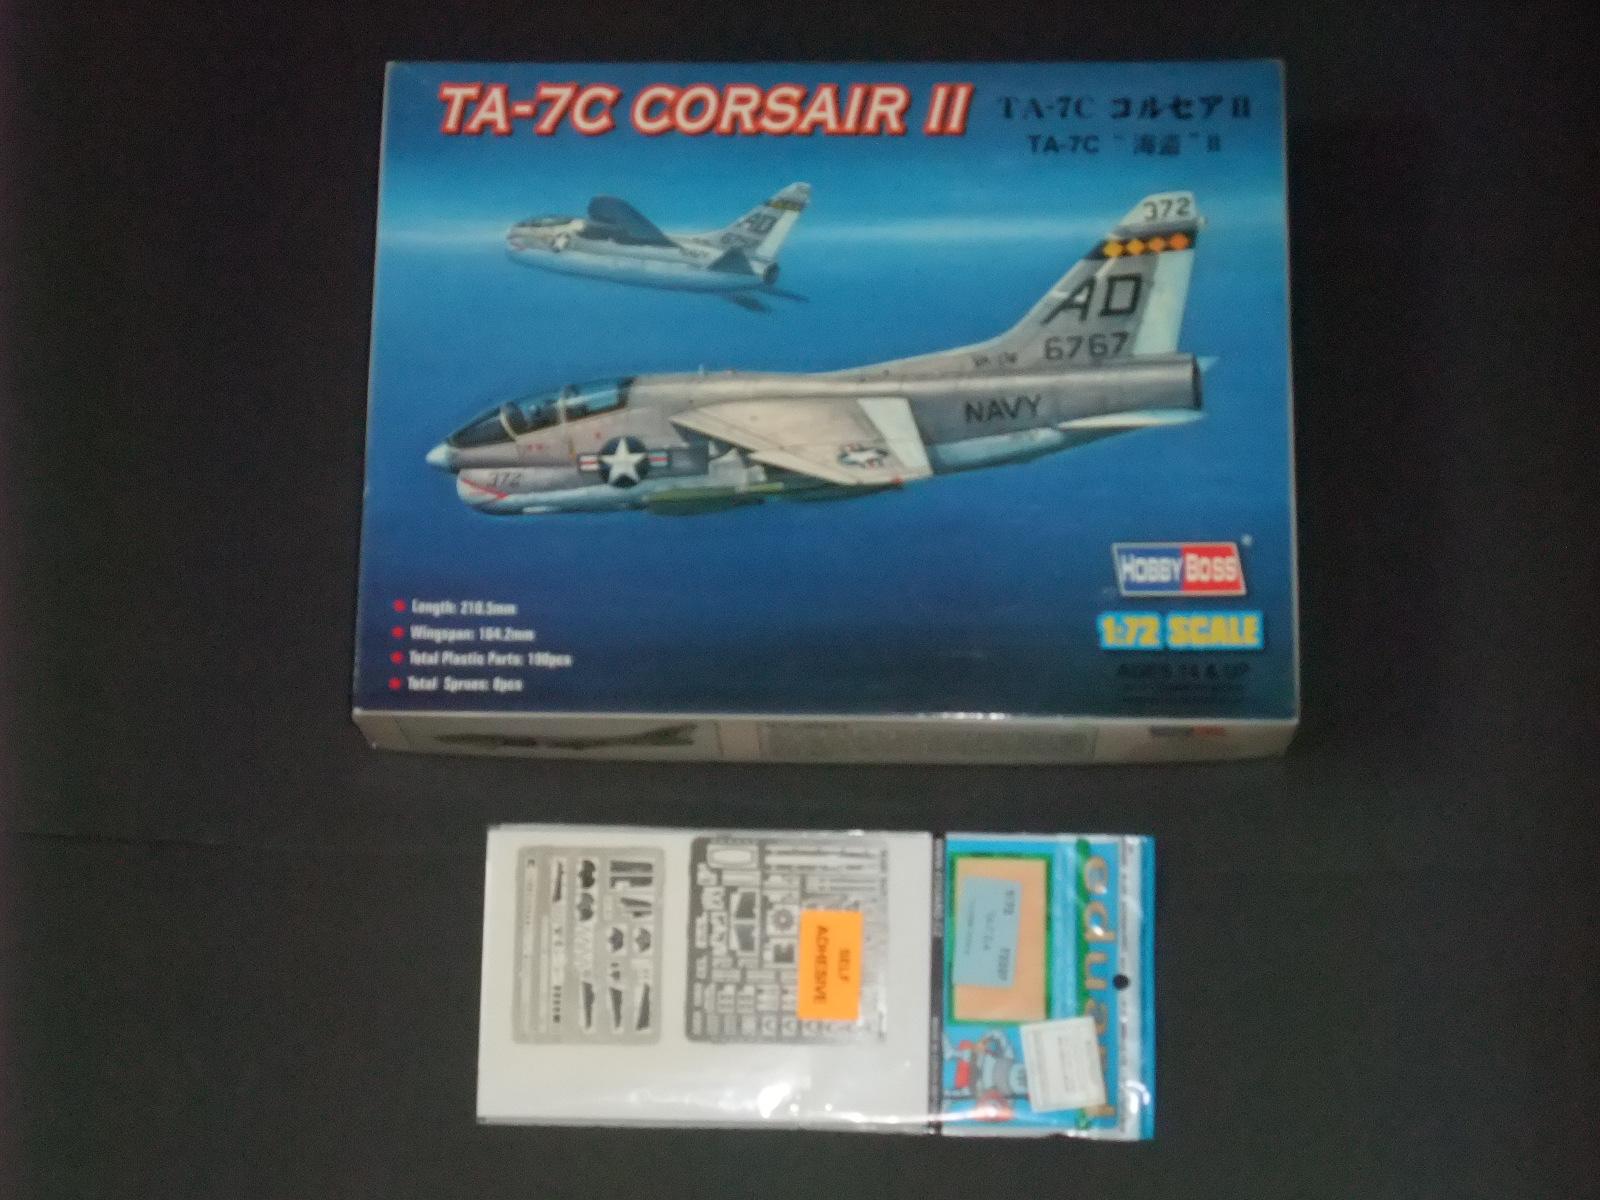 1/72 Hobby Boss  TA-7C Corsair II + EDU rézmaratással

8500.-